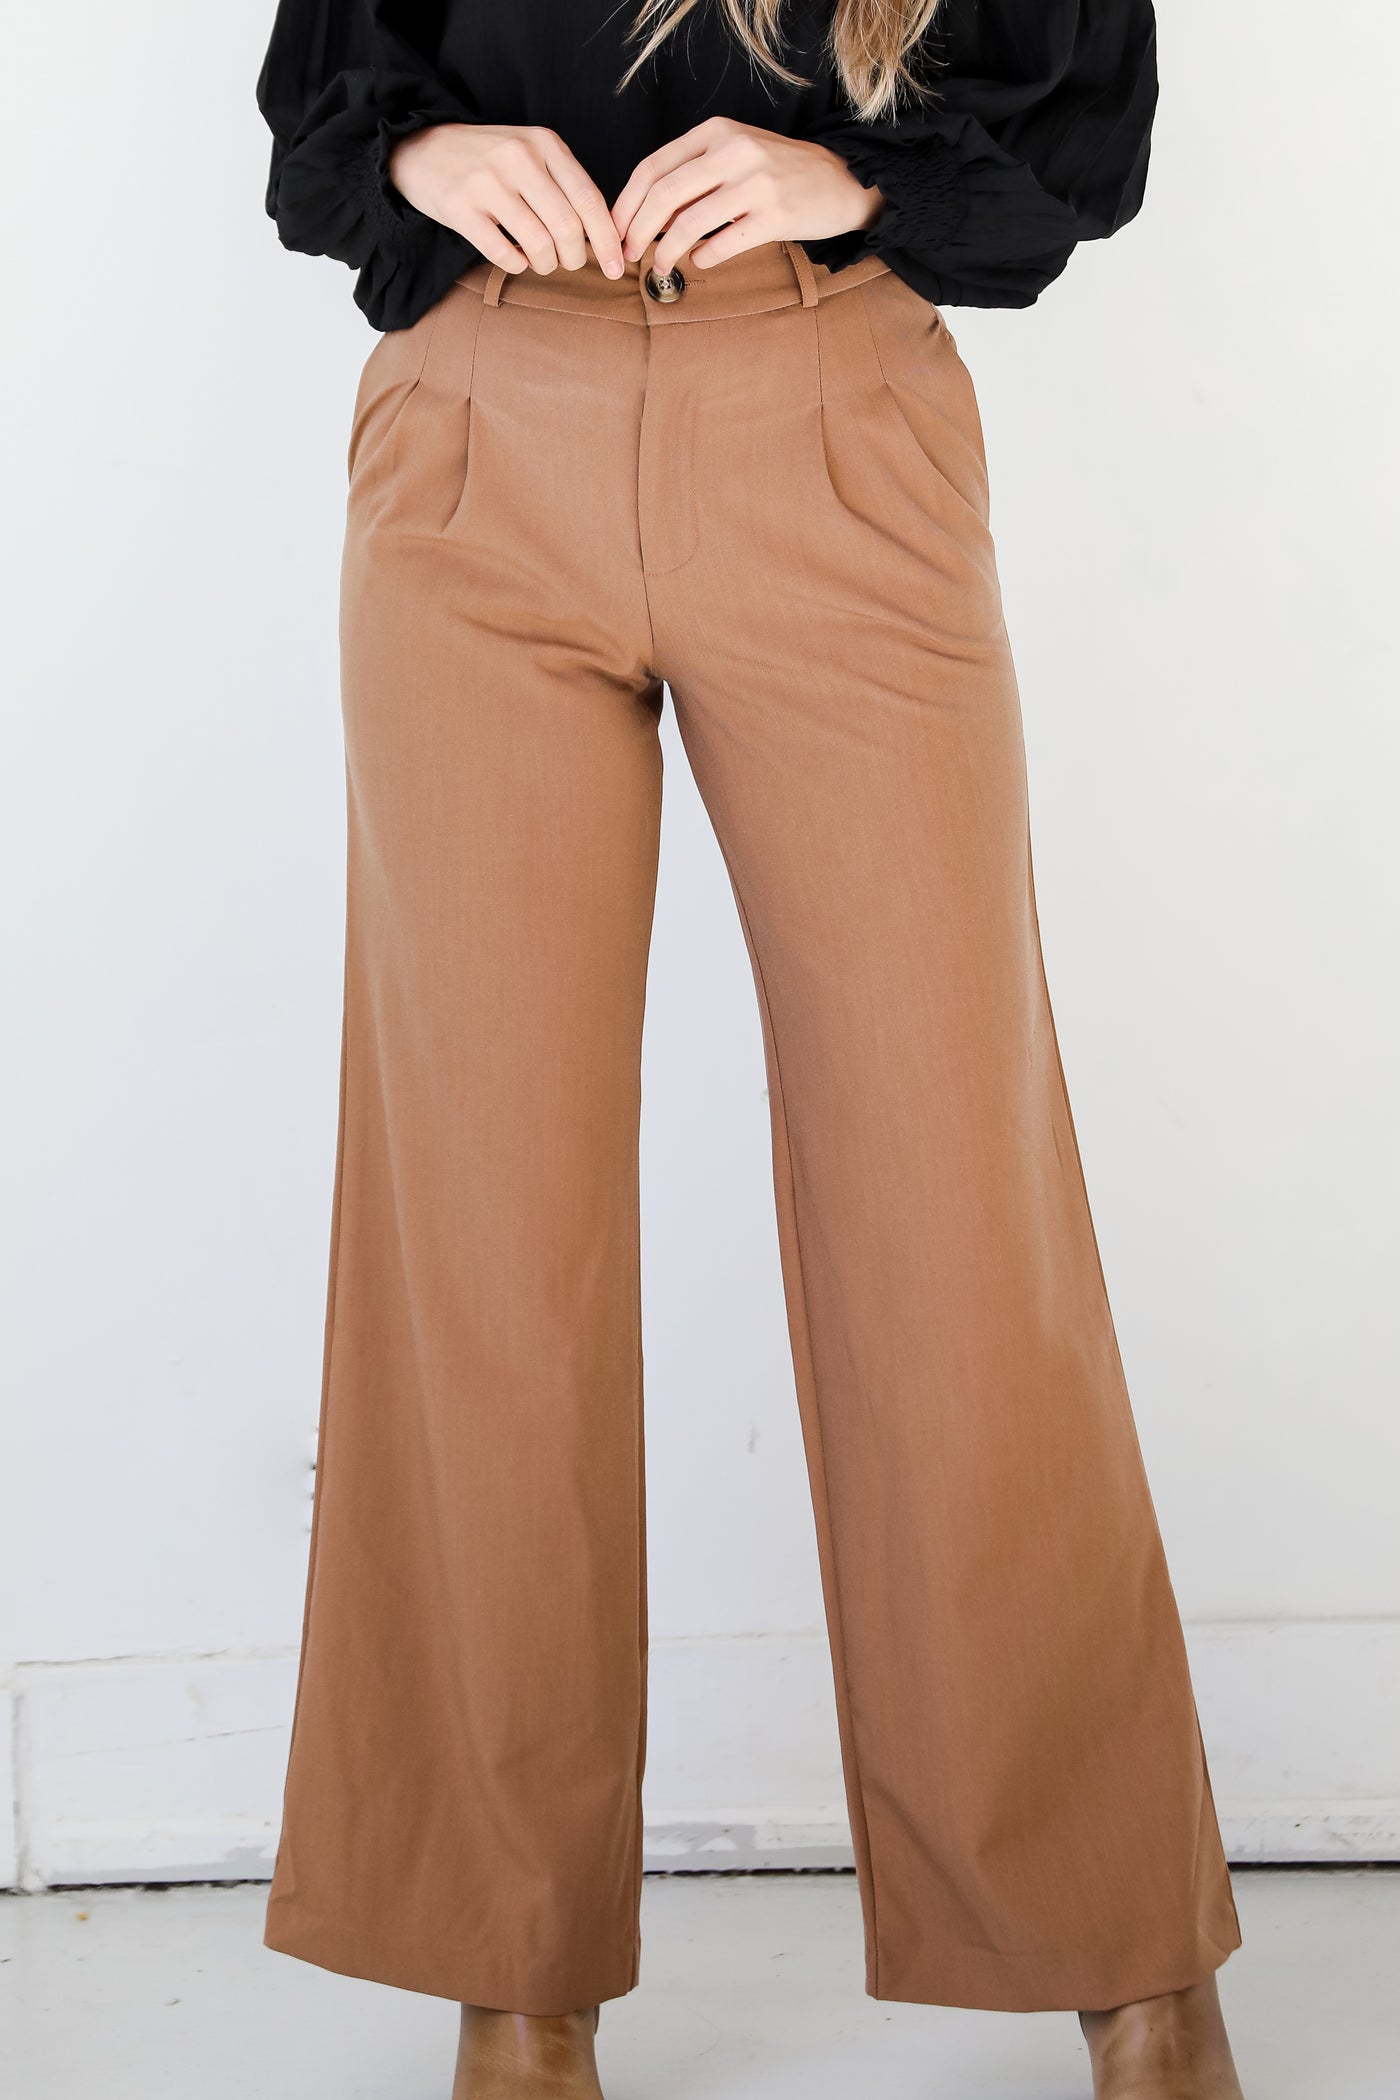 camel Trouser Pants on model